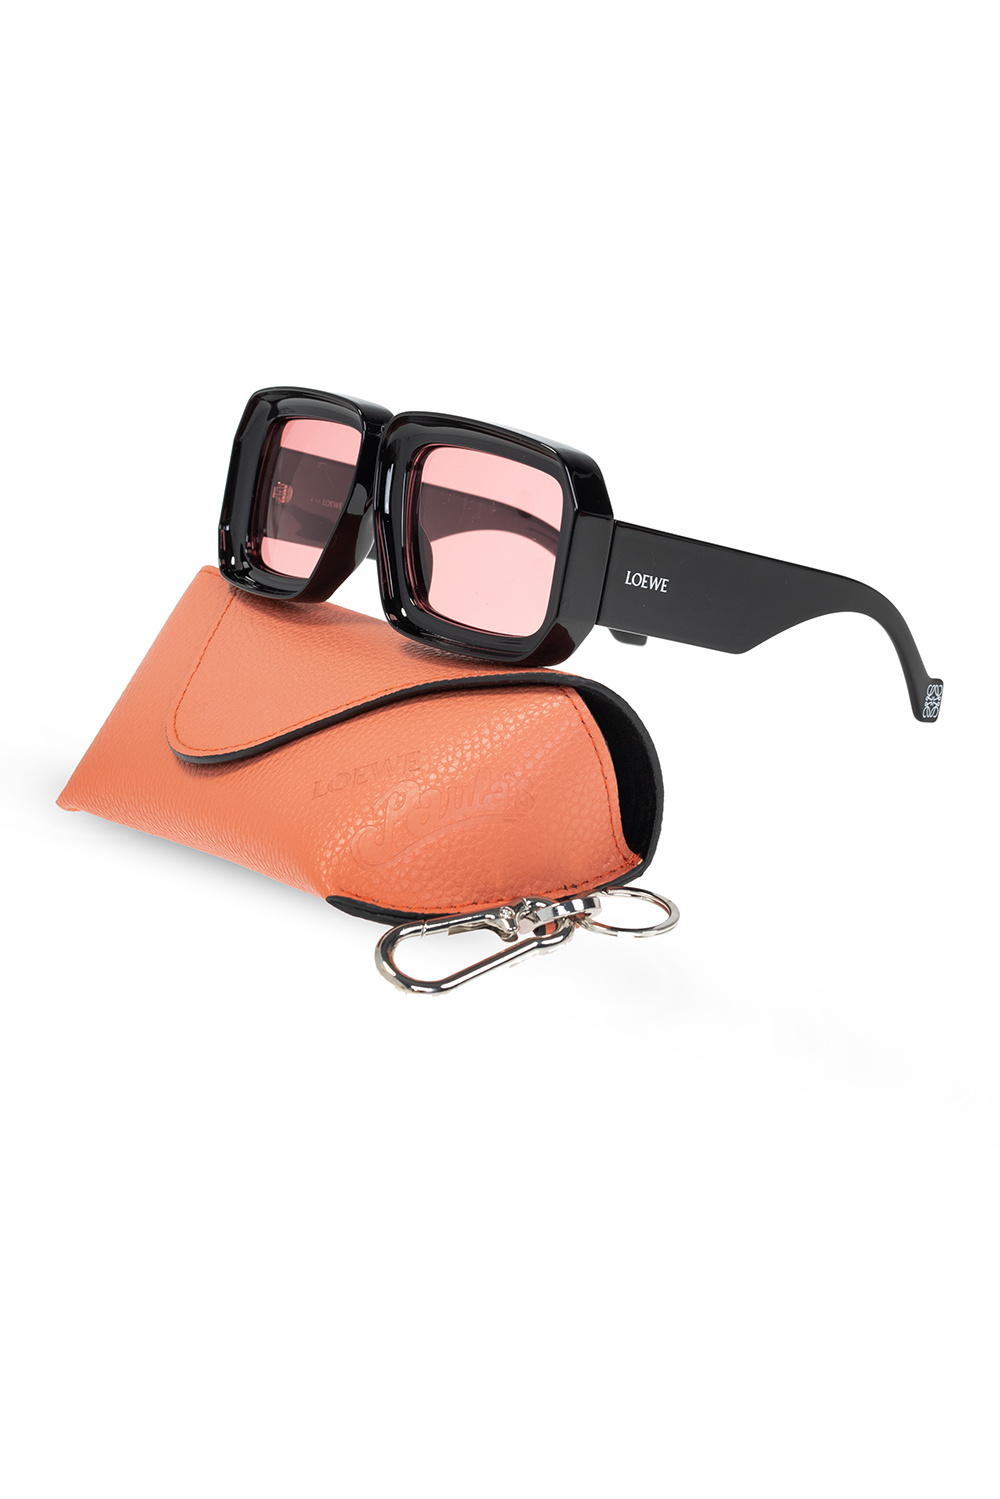 Screen Rectangular Sunglasses in Pink - Loewe